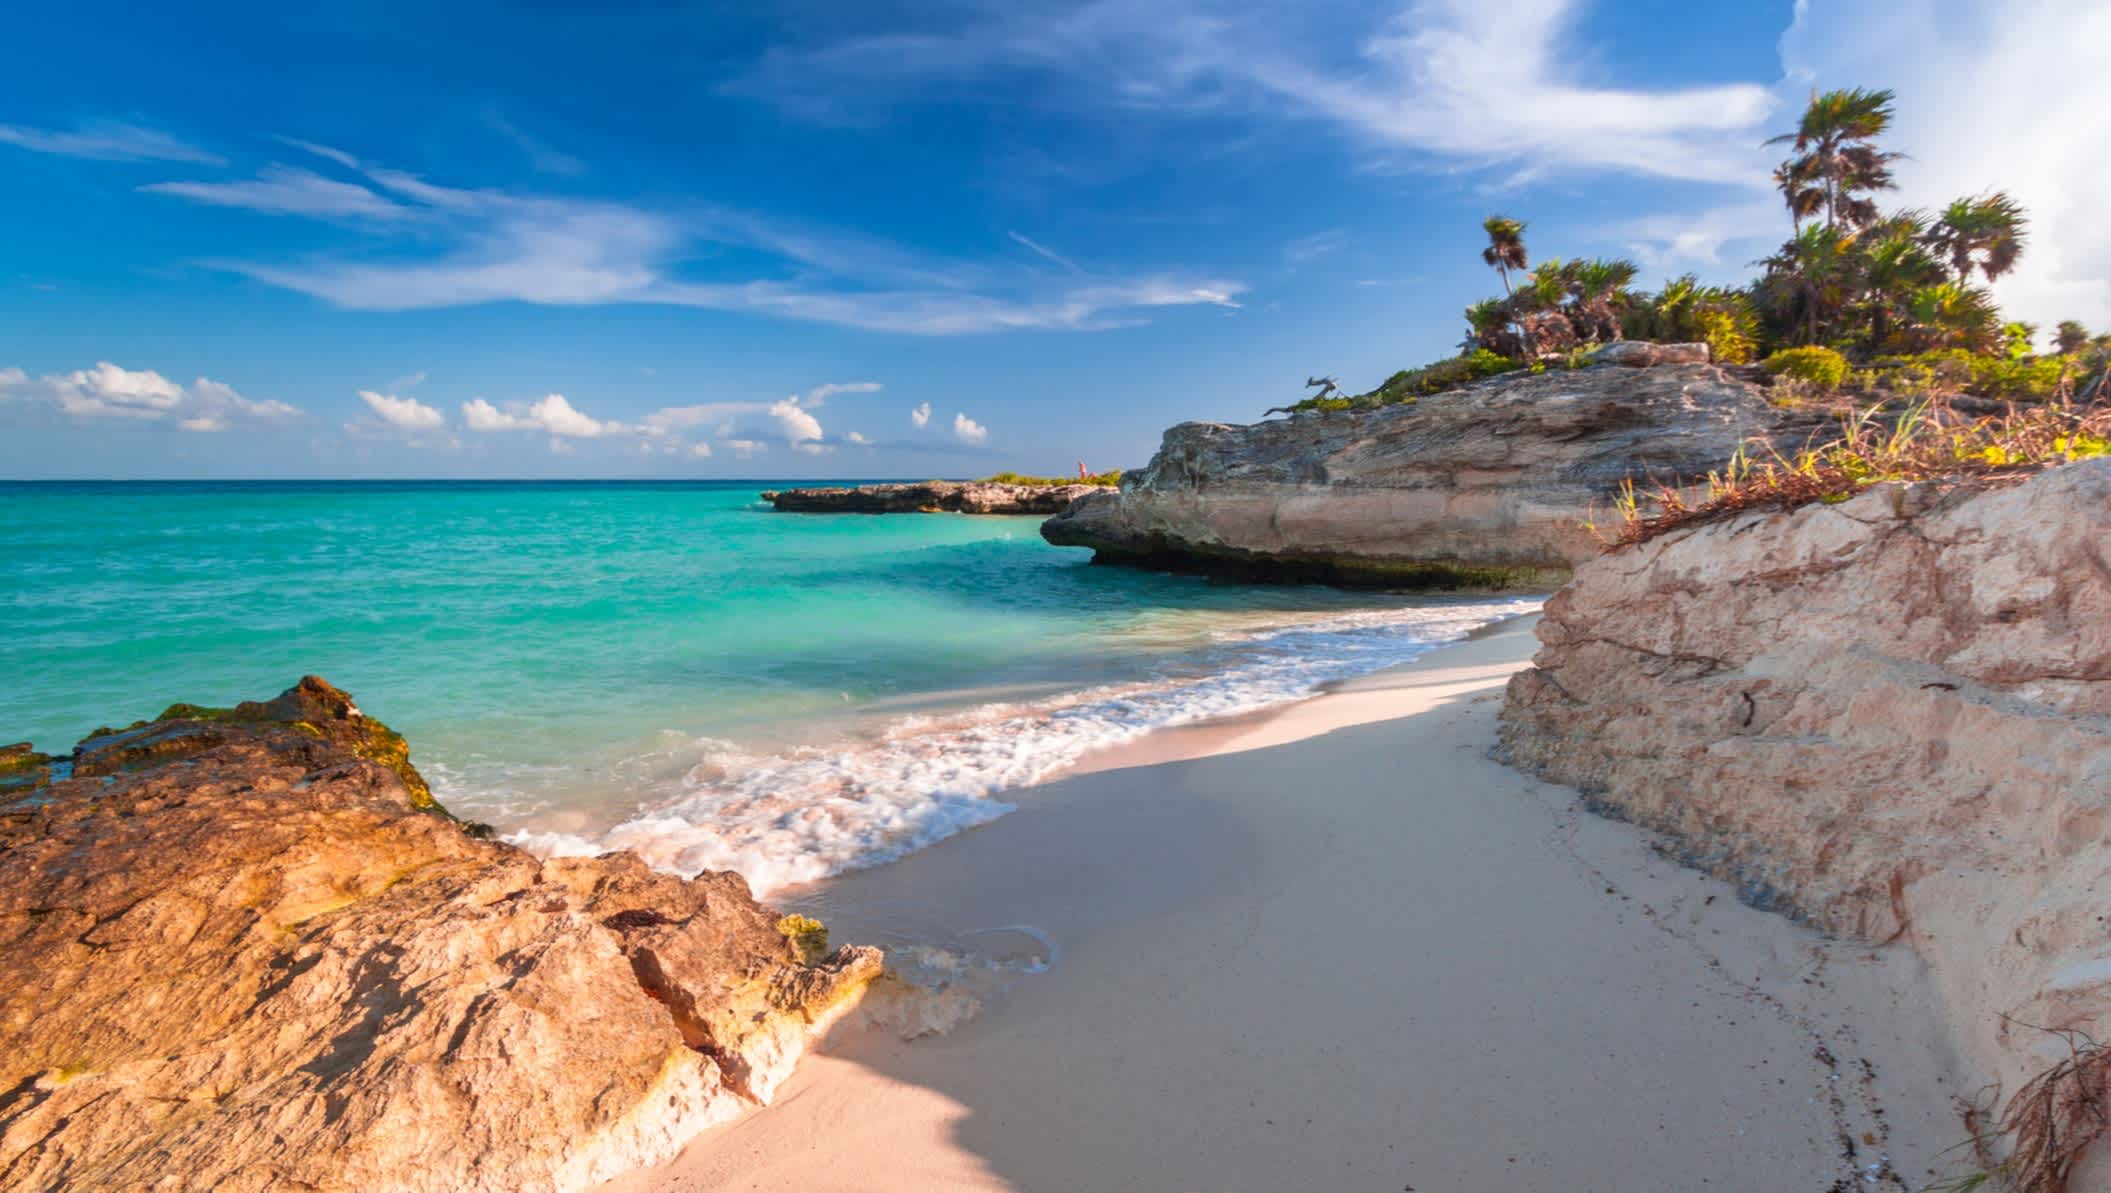 Strand am karibischen Meer in Playa del Carmen, Yucatan, Mexiko. 

